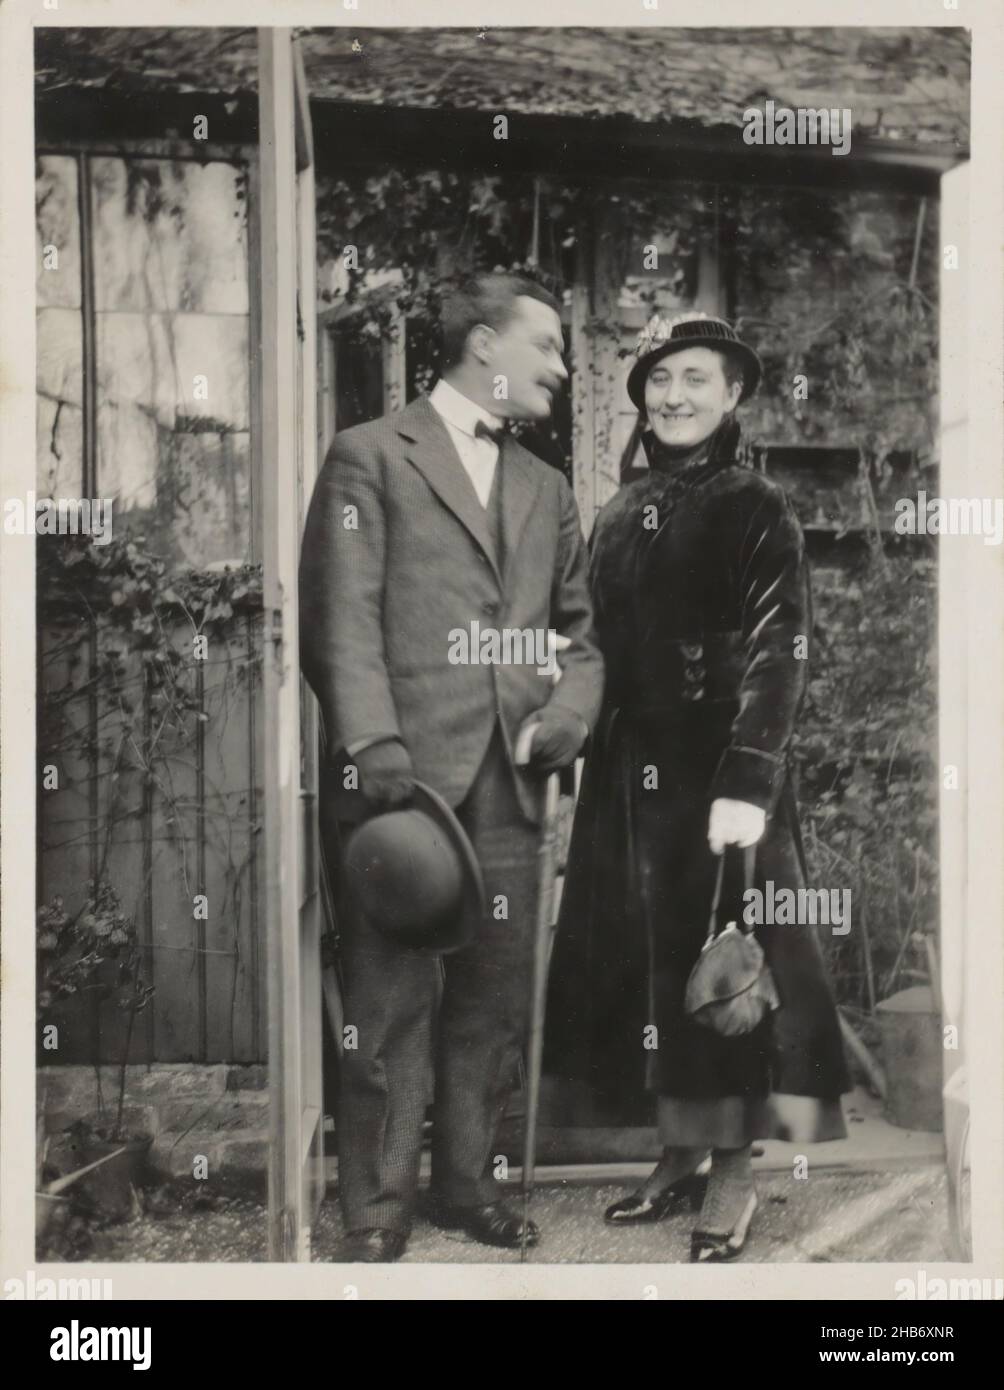 Portrait du couple Schaerer, anonyme, Angleterre (peut-être), c.1900 - c.1920, support photographique, impression en gélatine argentée, hauteur 108 mm × largeur 83 mm Banque D'Images